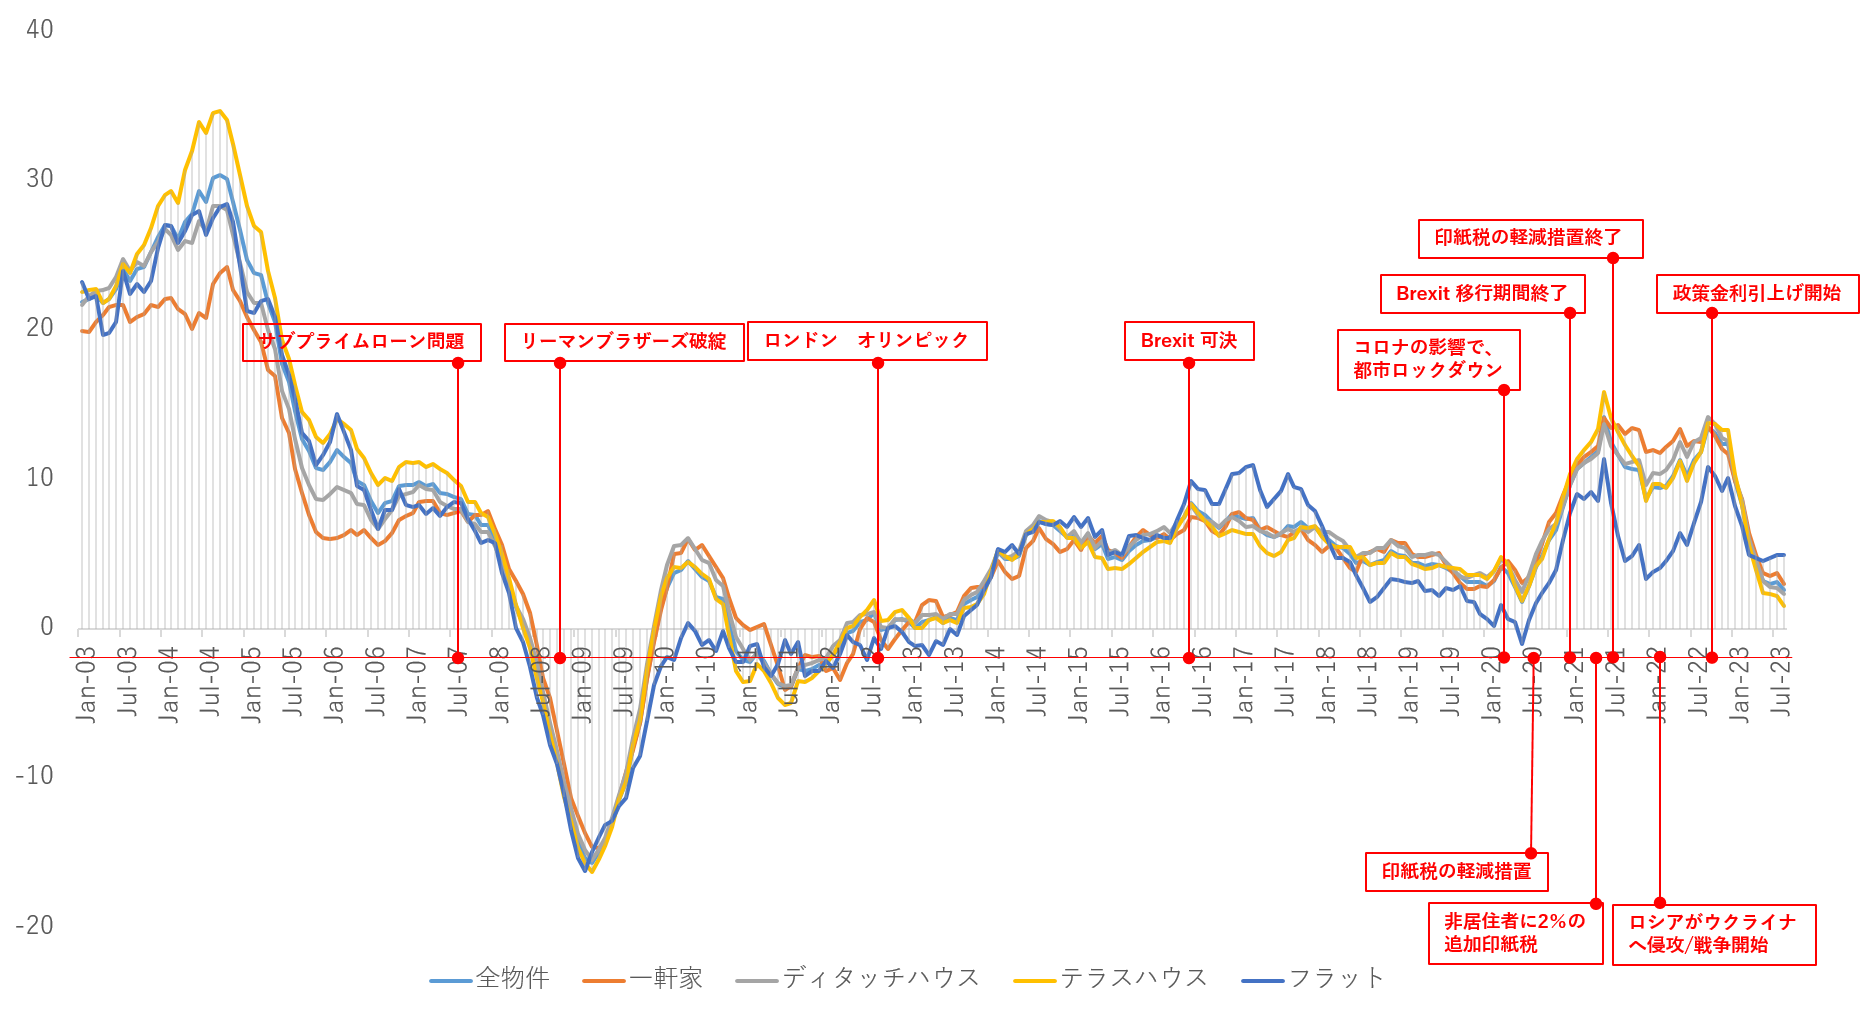 海外不動産投資 イギリス グレーターマンチェスター売買市場 (年間比較)